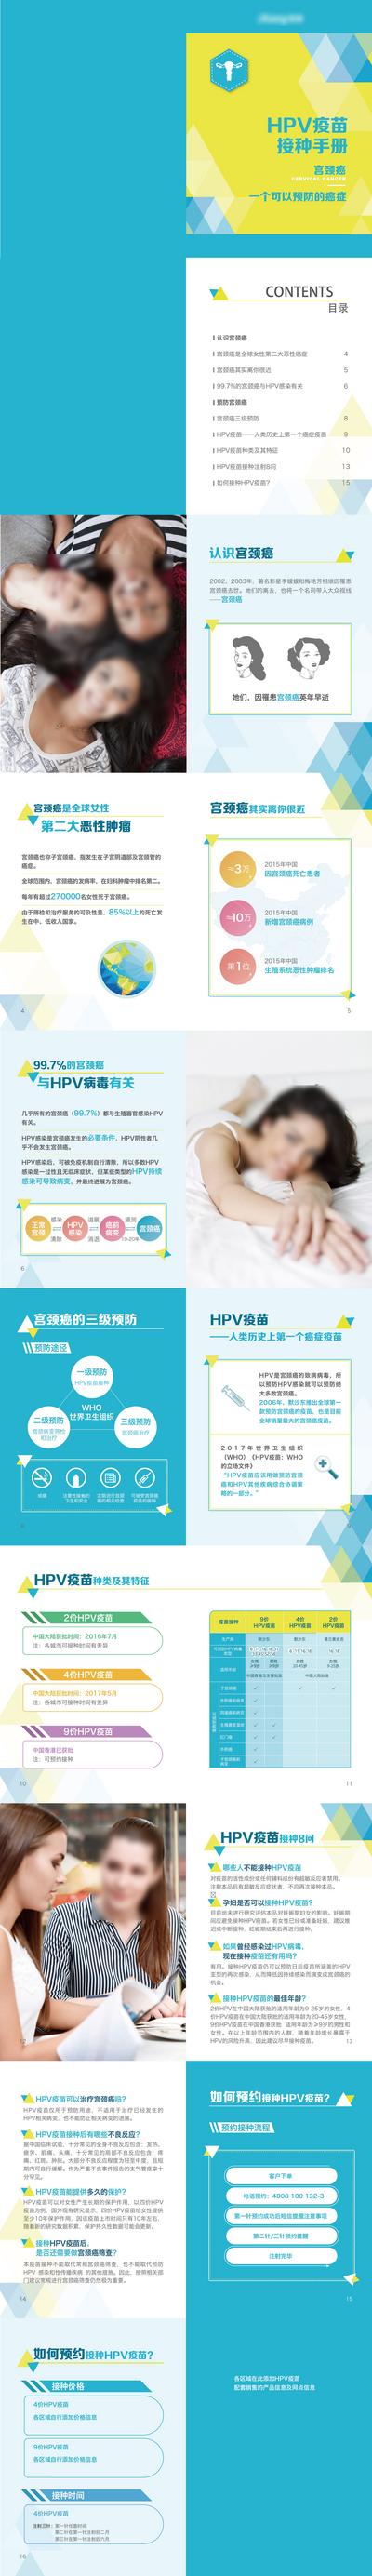 南门网 广告 海报 专题 HPV 疫苗 接种 宫颈癌 女性 手册 折页 DM